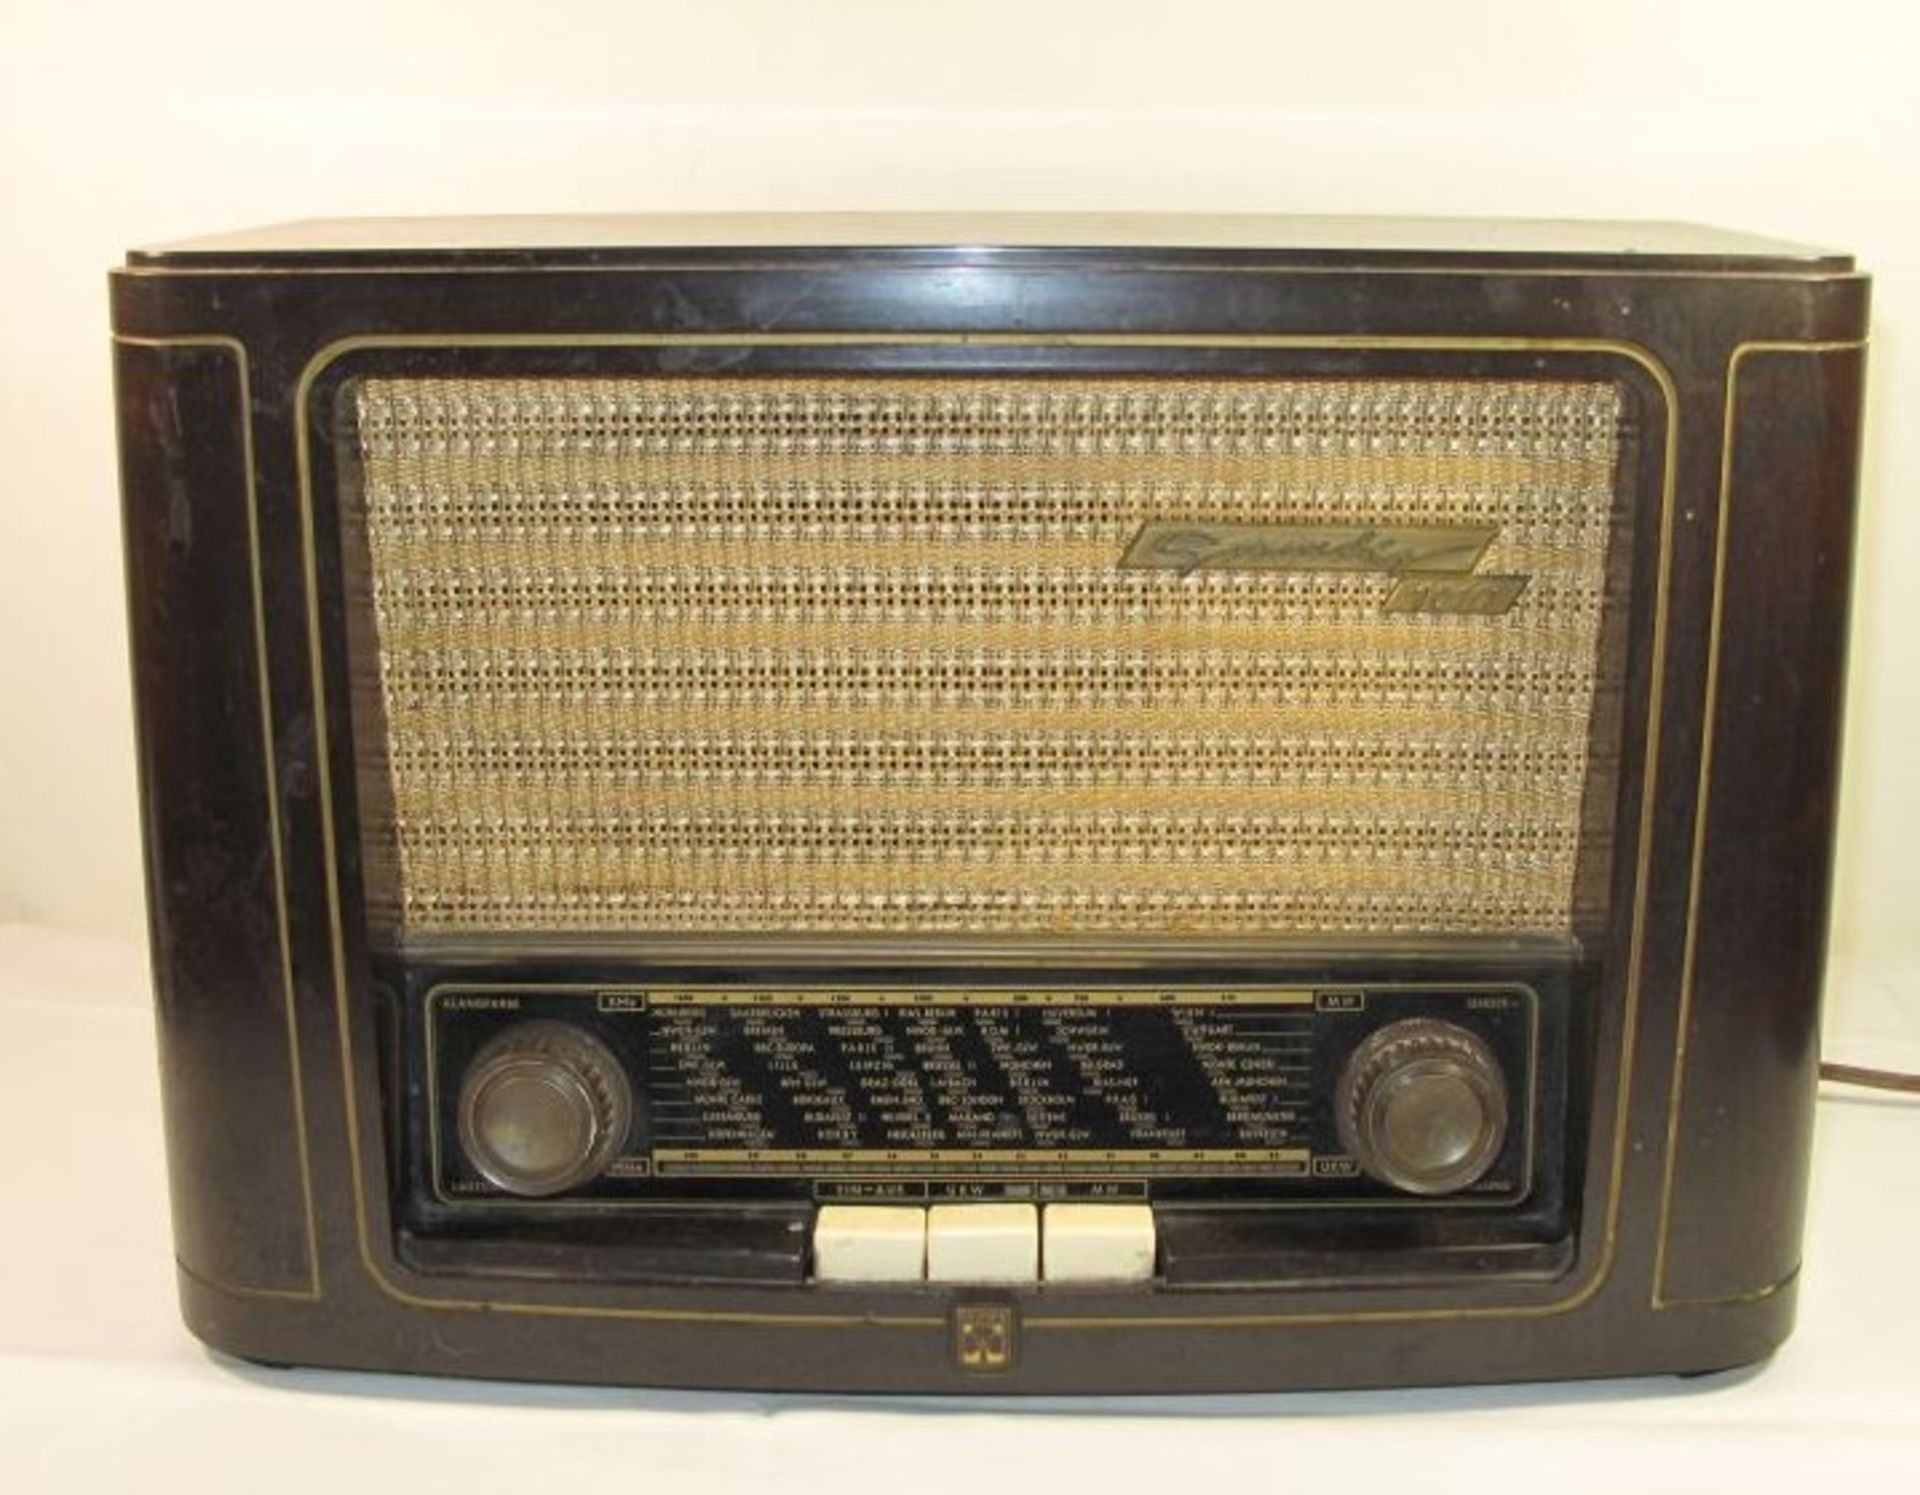 Röhrenradio "Grundig", Typ 1010, wohl defekt (Licht geht an), H-30cm B-44cm T-18cm.